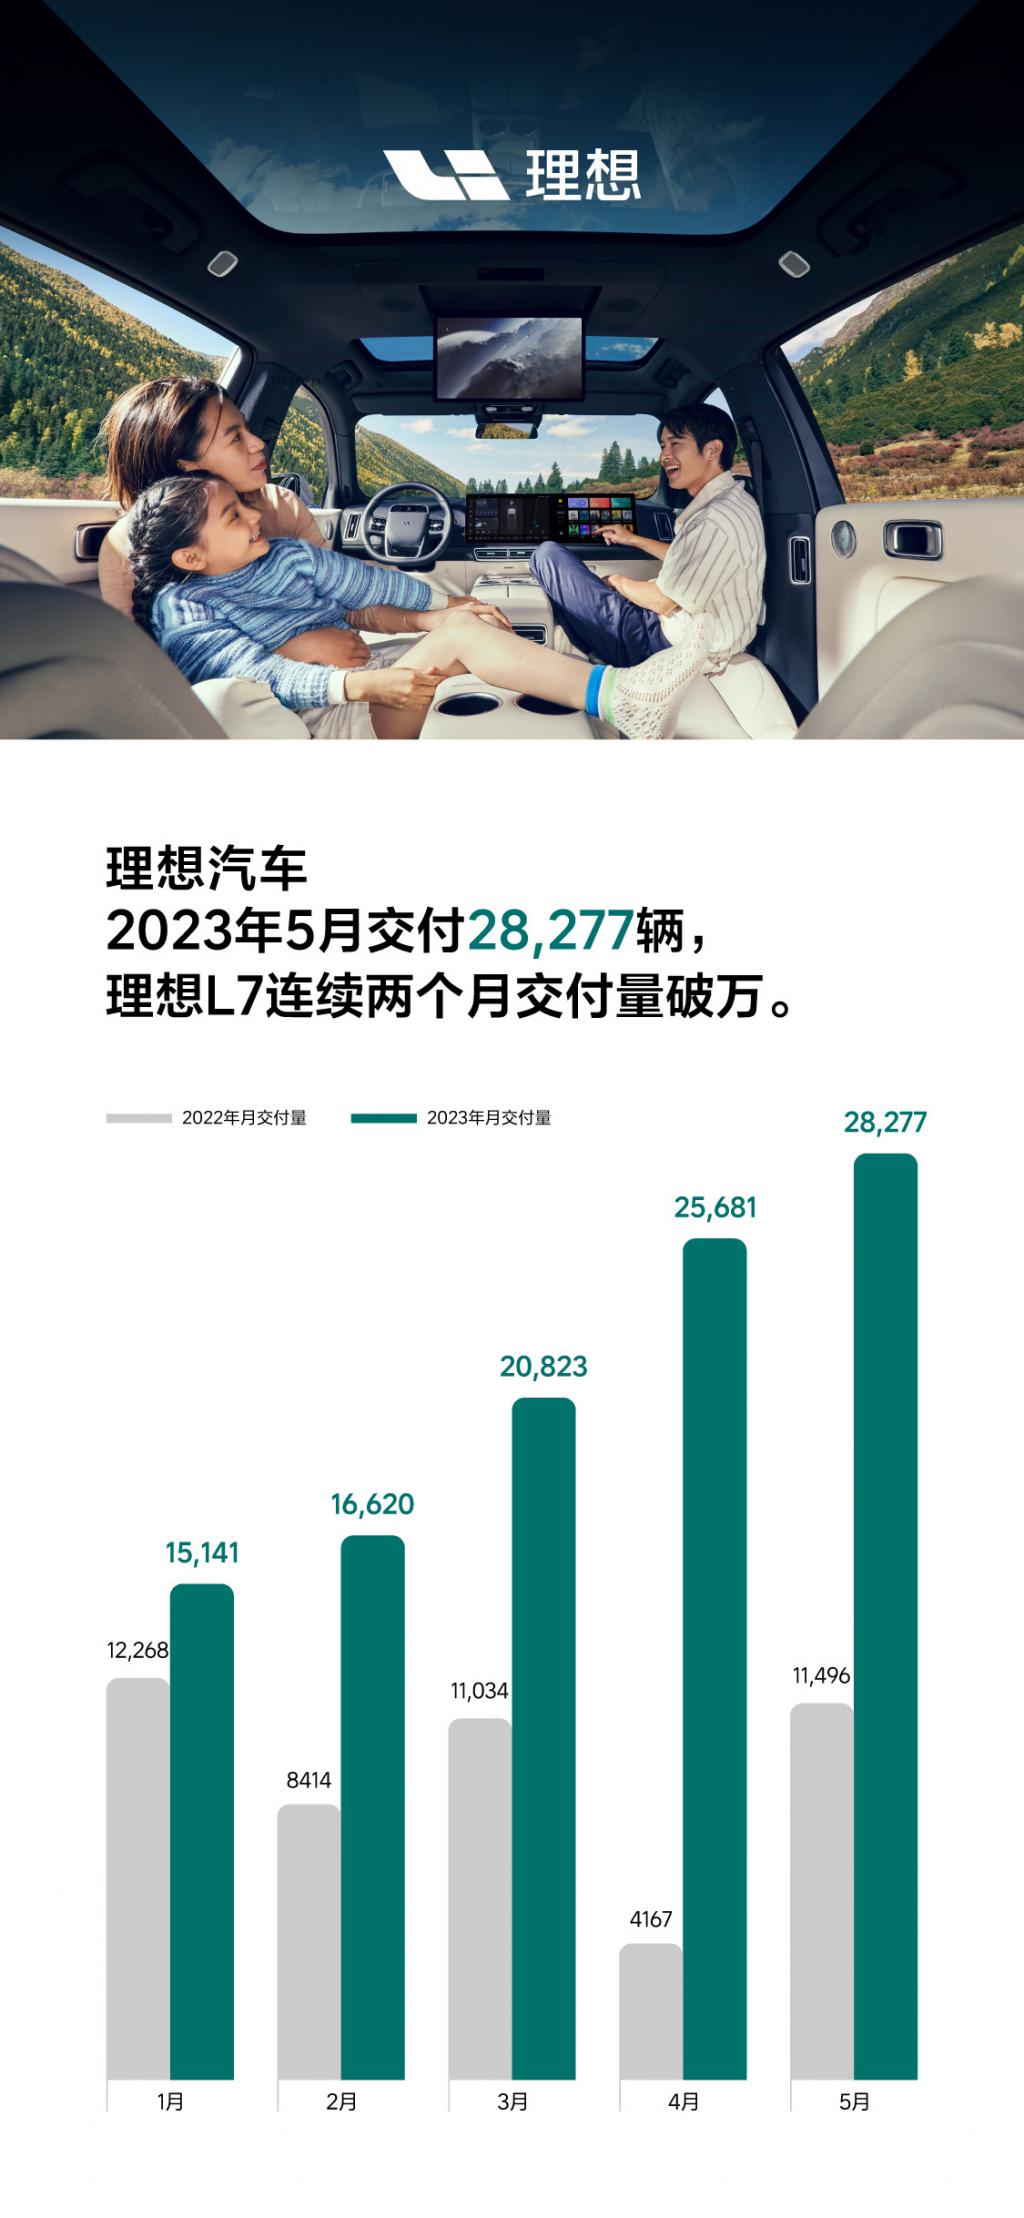 理想汽车 5 月交付新车 28277 辆，同比增长 146%